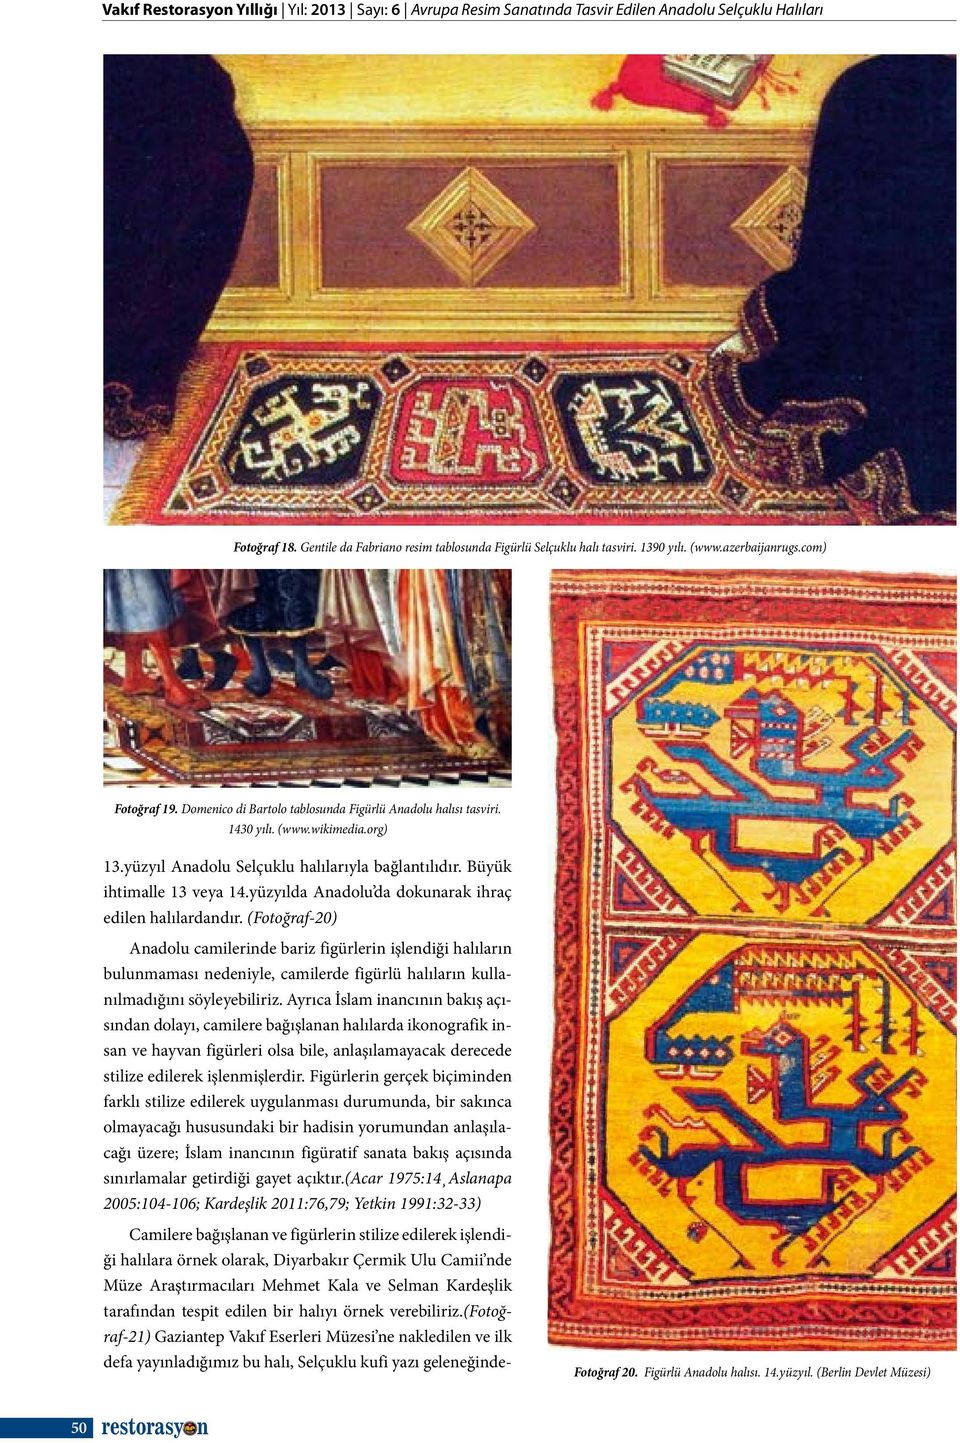 Büyük ihtimalle 13 veya 14.yüzyılda Anadolu da dokunarak ihraç edilen halılardandır.